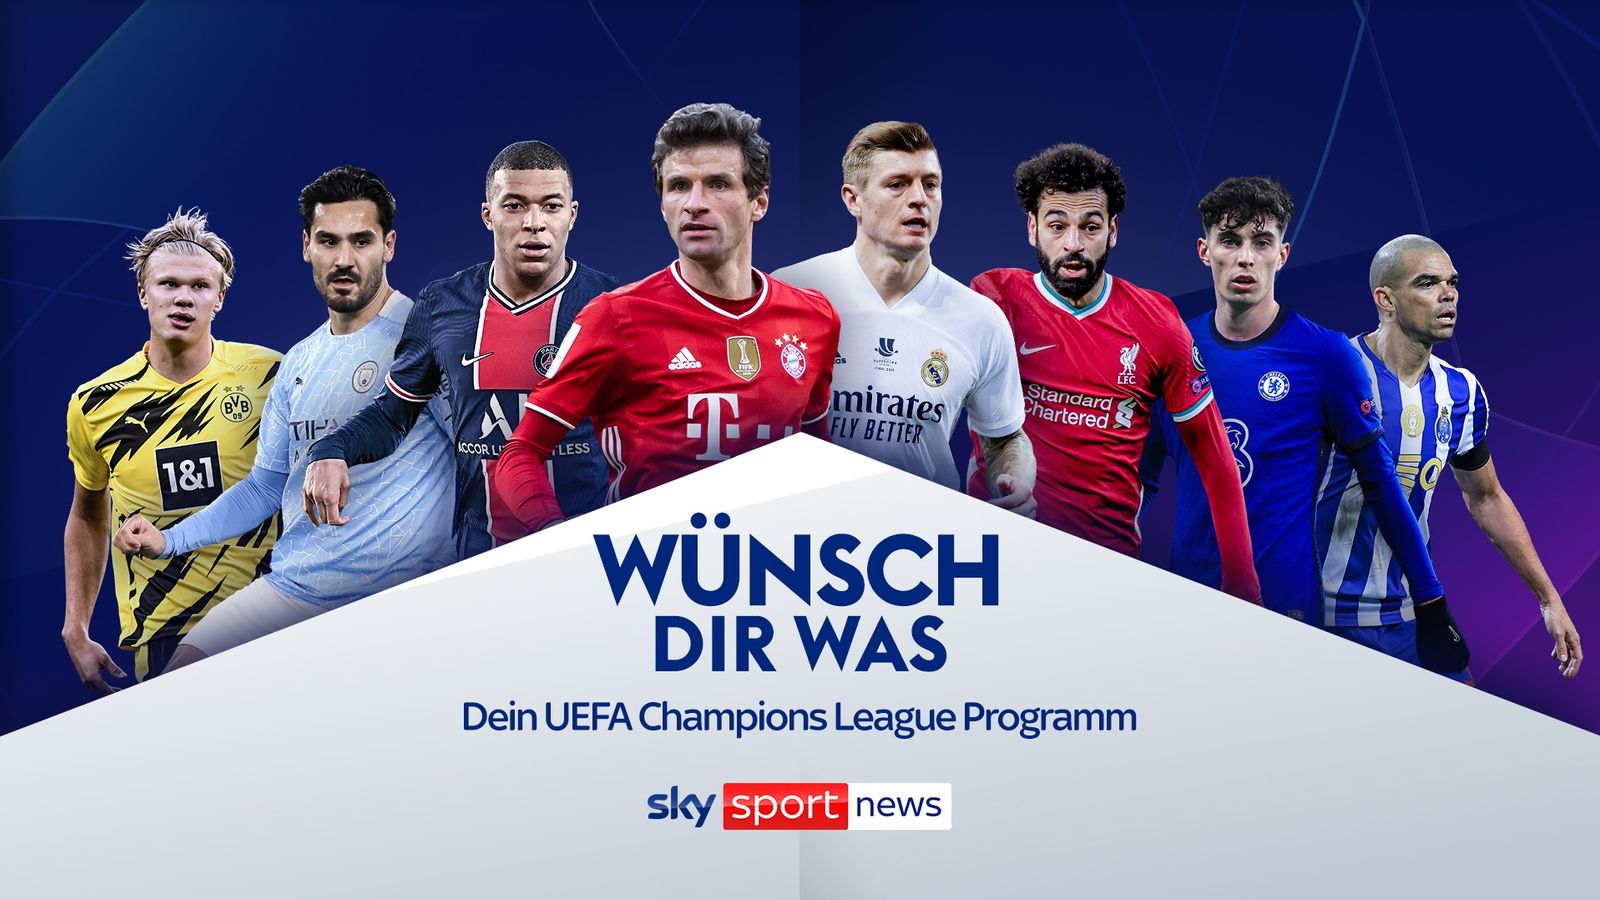 Wünsch Dir Was Dein UEFA Champions League Programm Fußball News Sky Sport